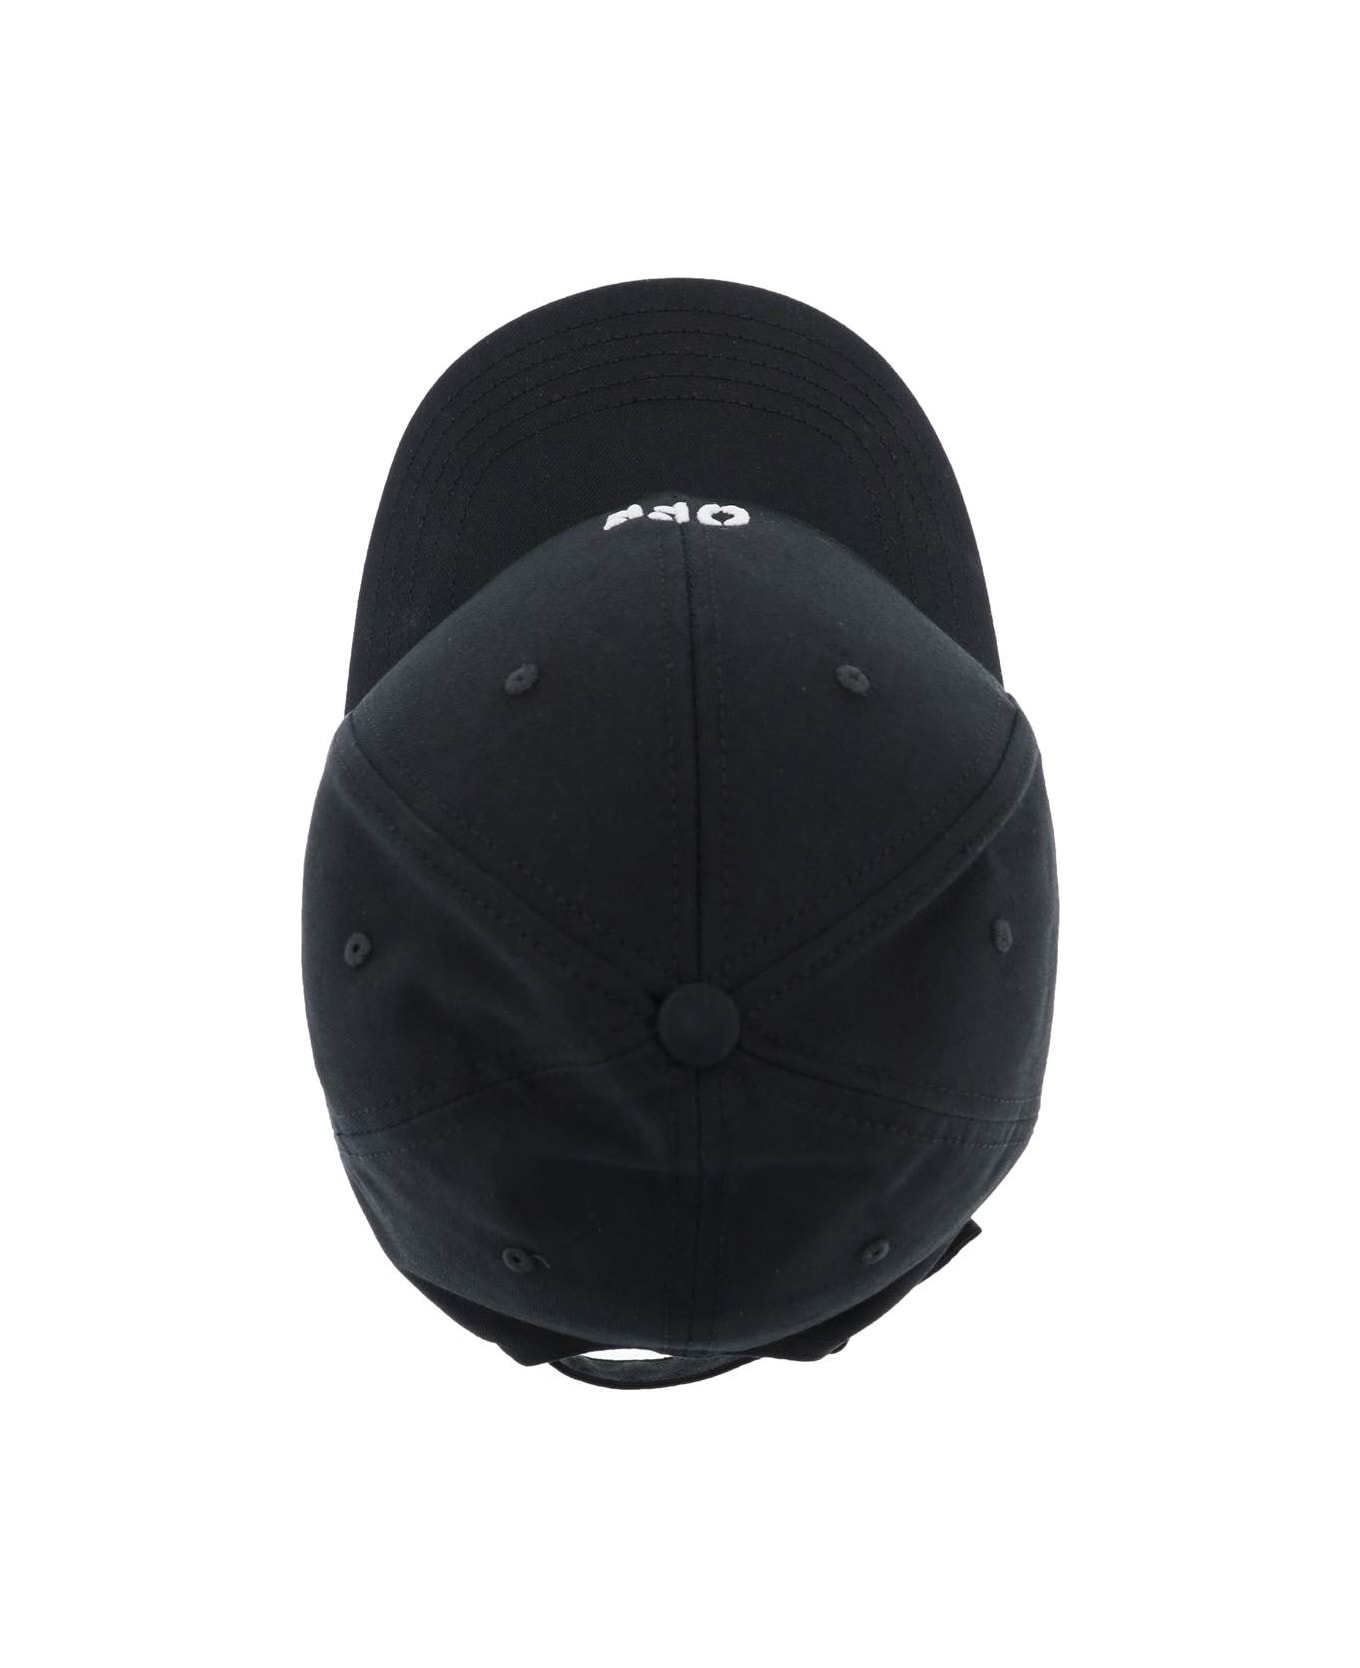 Off-White Logo Baseball Cap - black